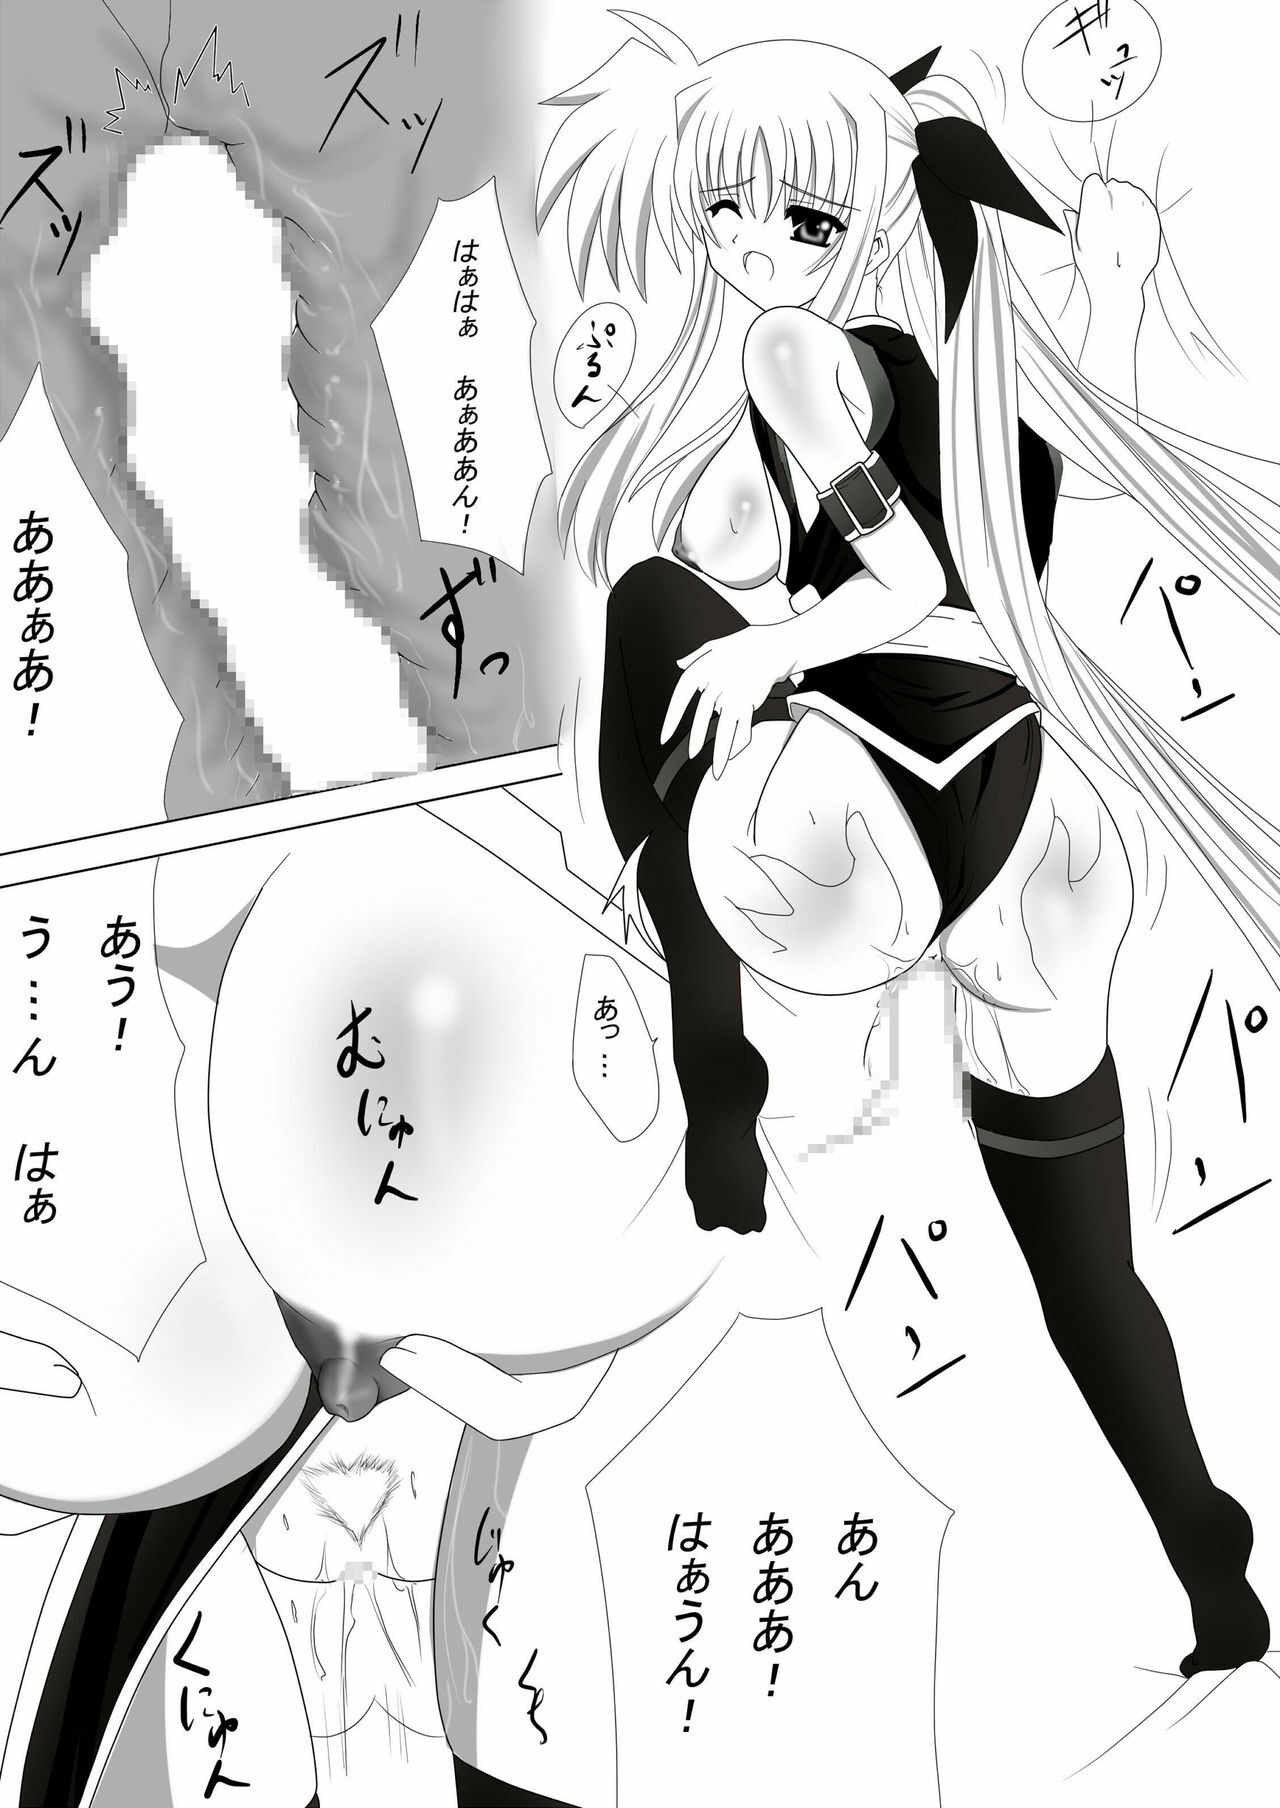 (CT16) [Nekoya (Kuon Kyoushirou)] Fate Salaclously (Mahou Shoujo Lyrical Nanoha) page 18 full